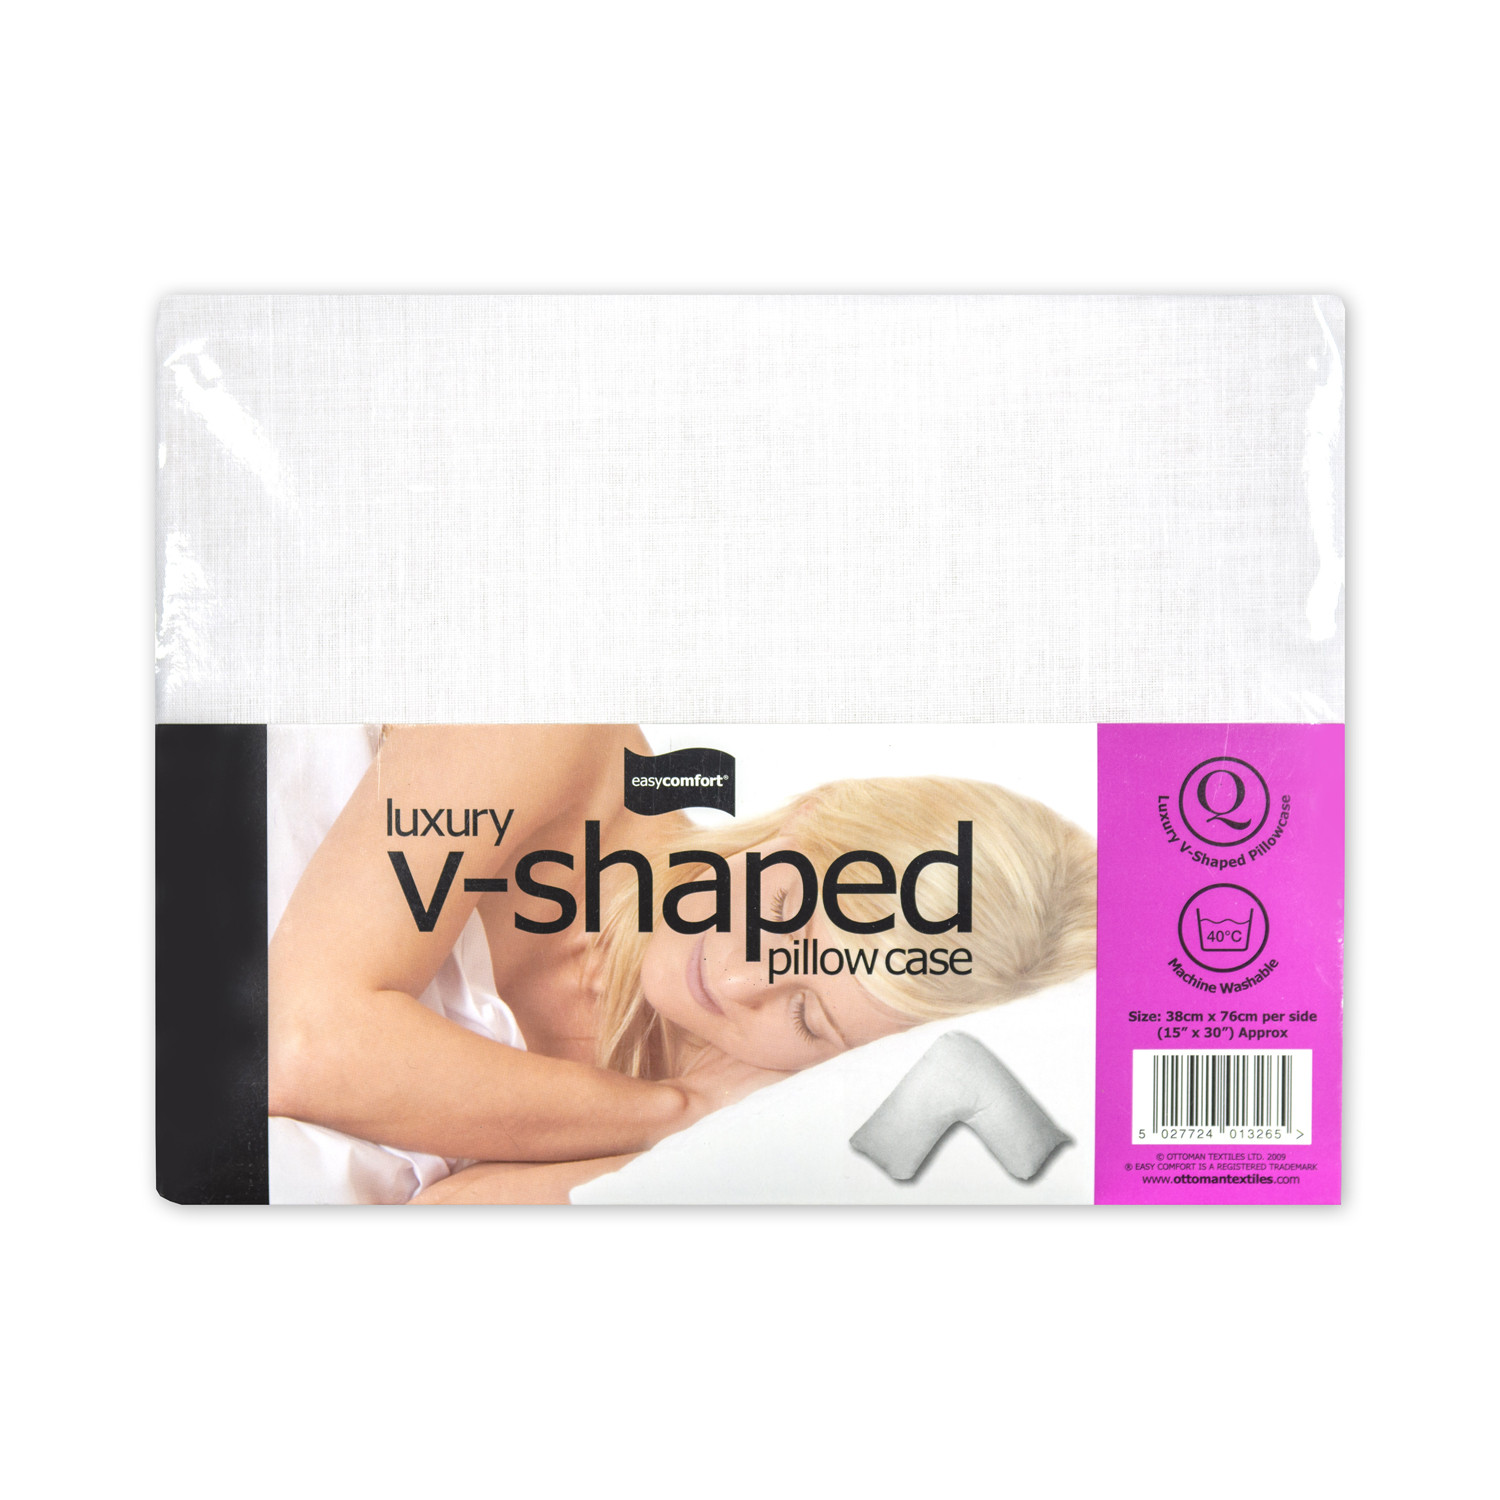 Luxury V-shaped Pillowcase Image